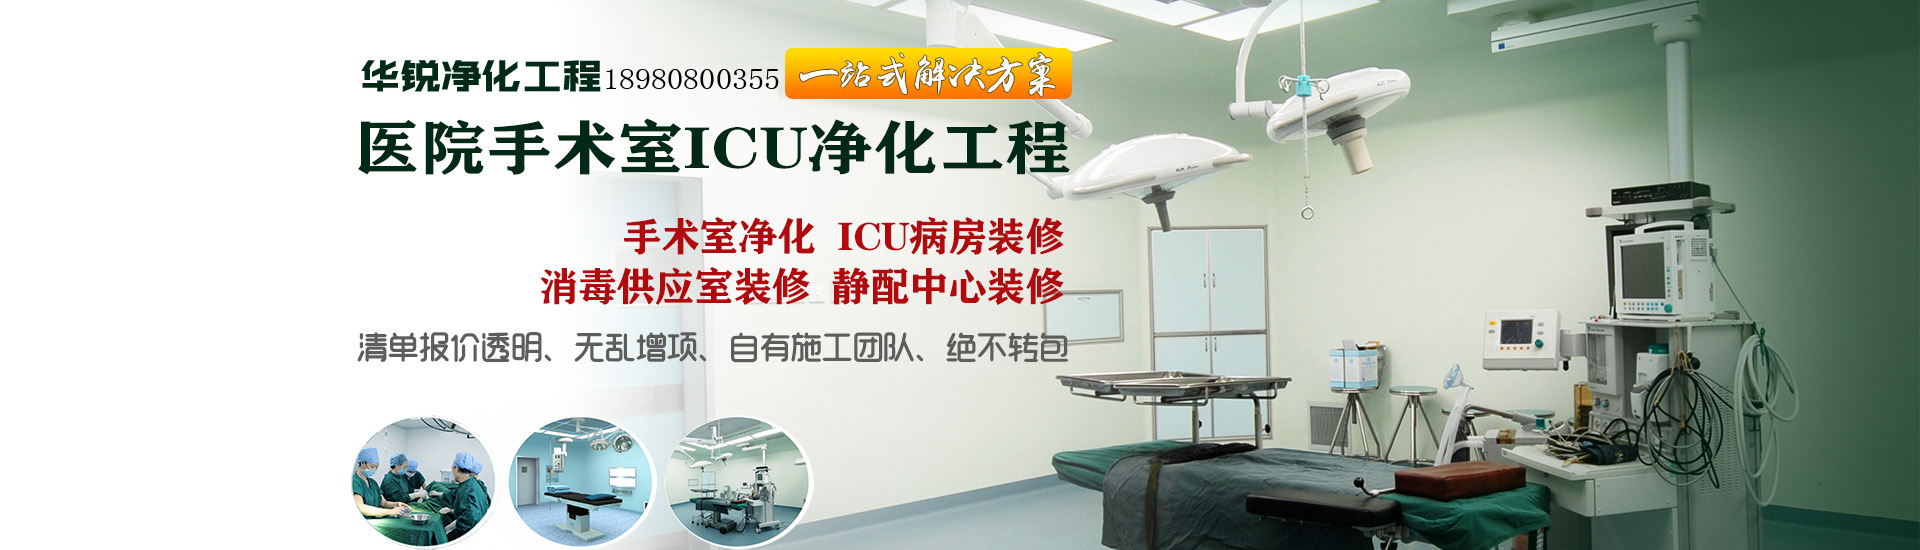 医院手术室ICU净化工程banner